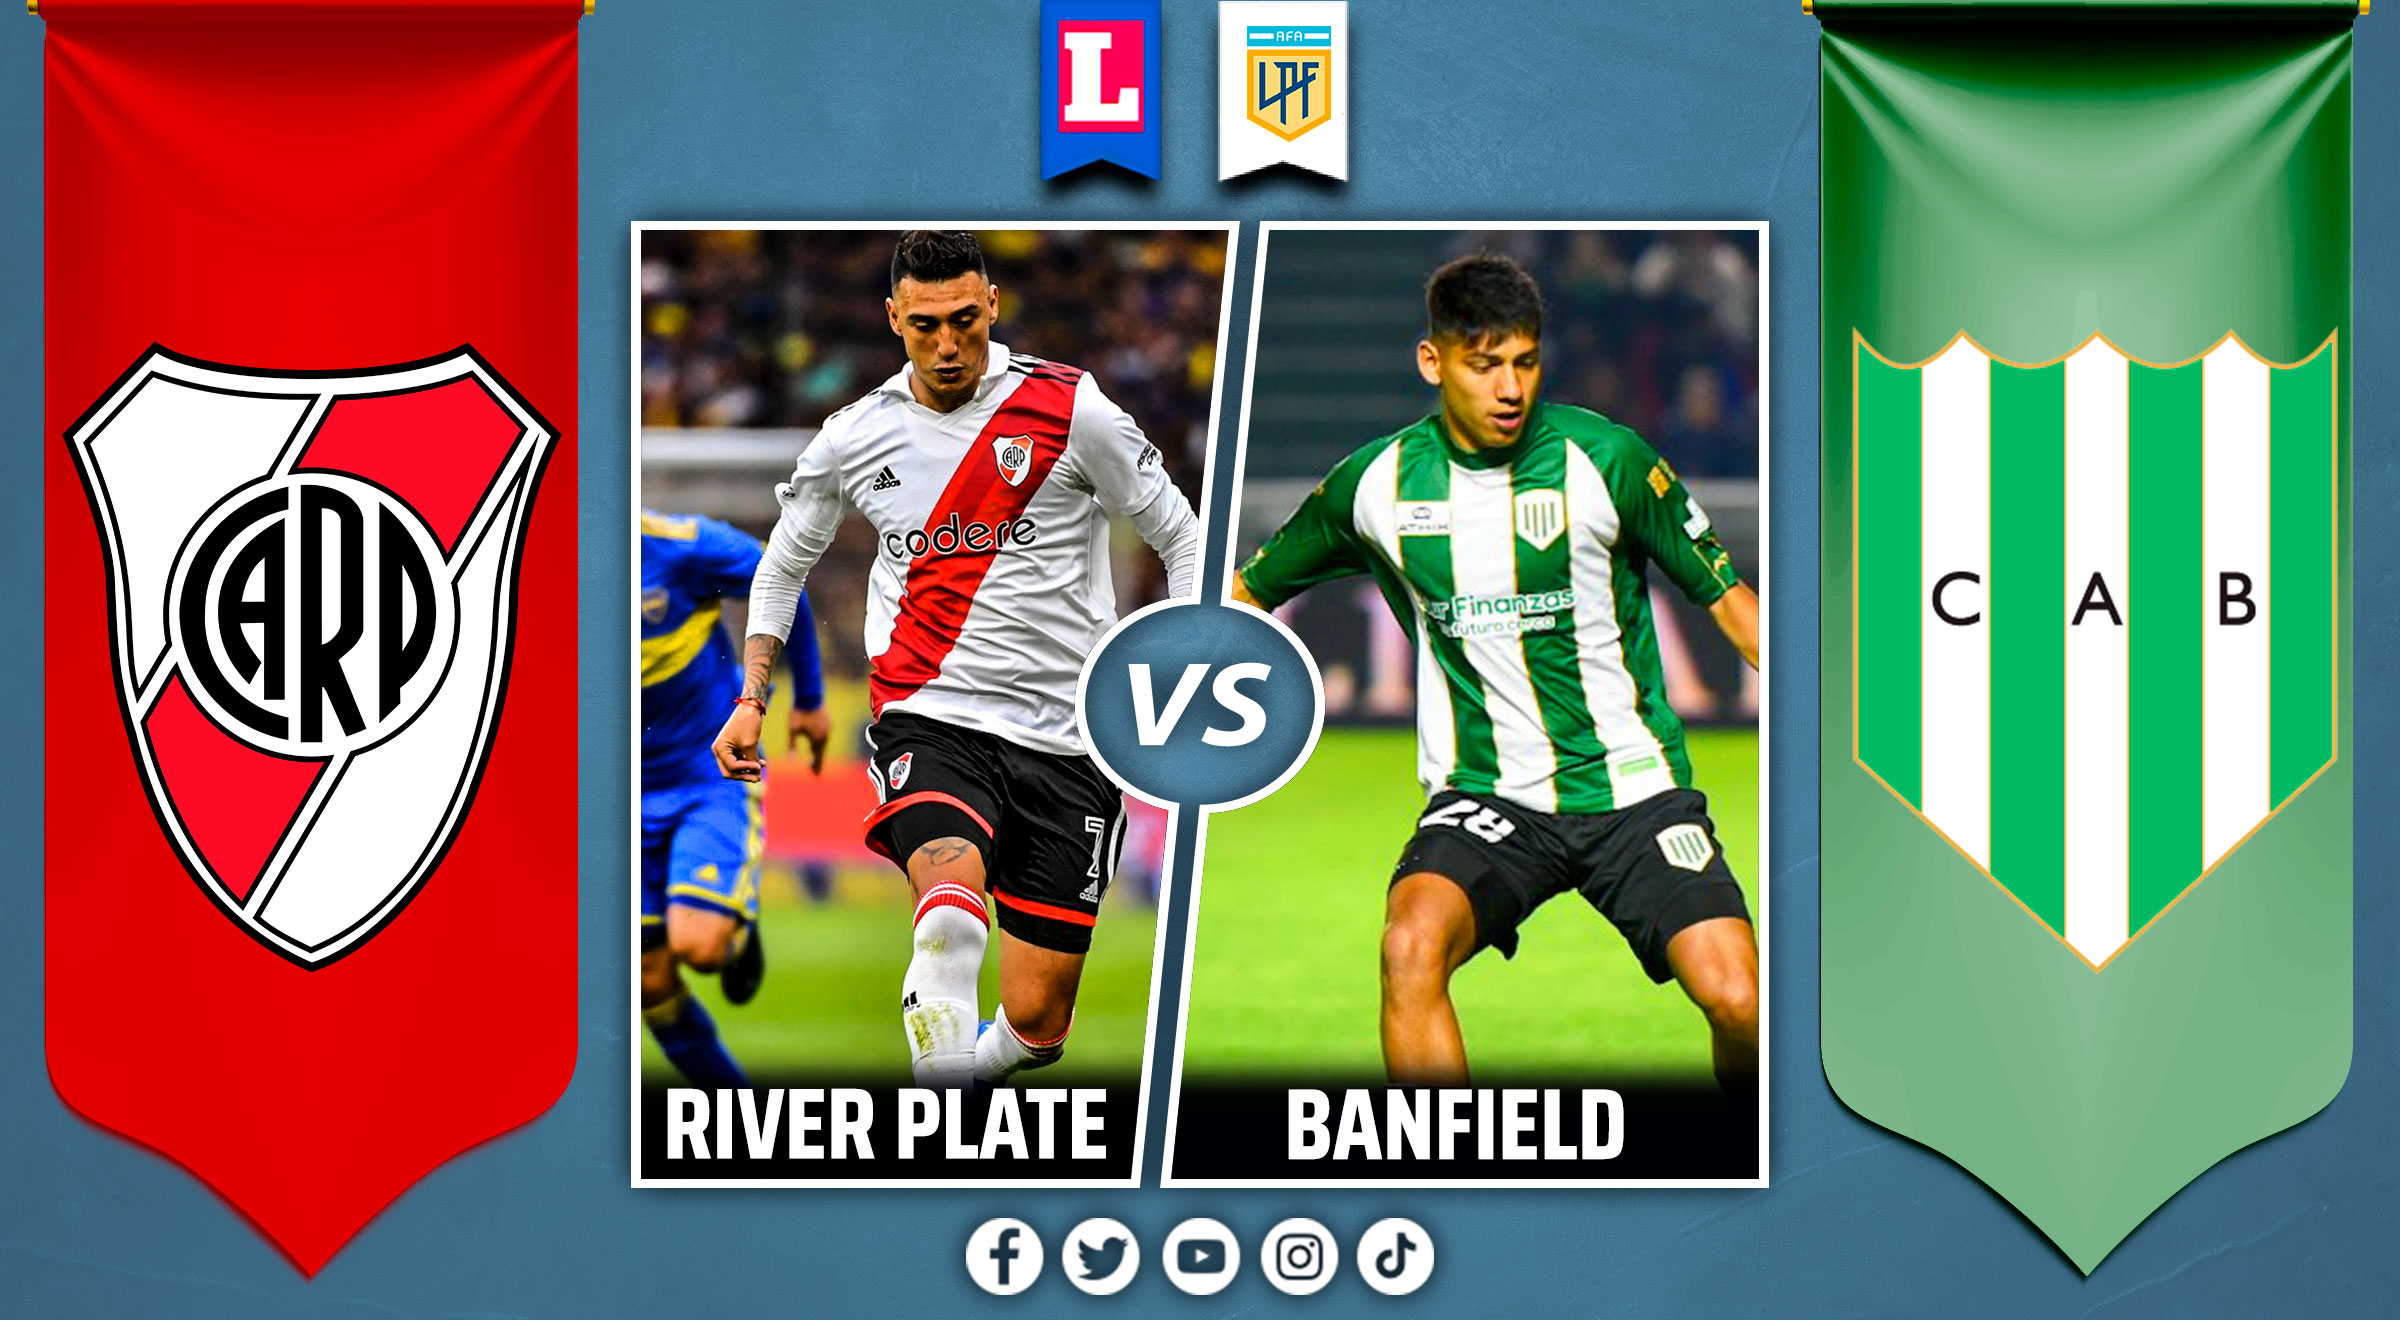 Formación de River Plate vs Banfield por la fecha 19 de la Liga Profesional